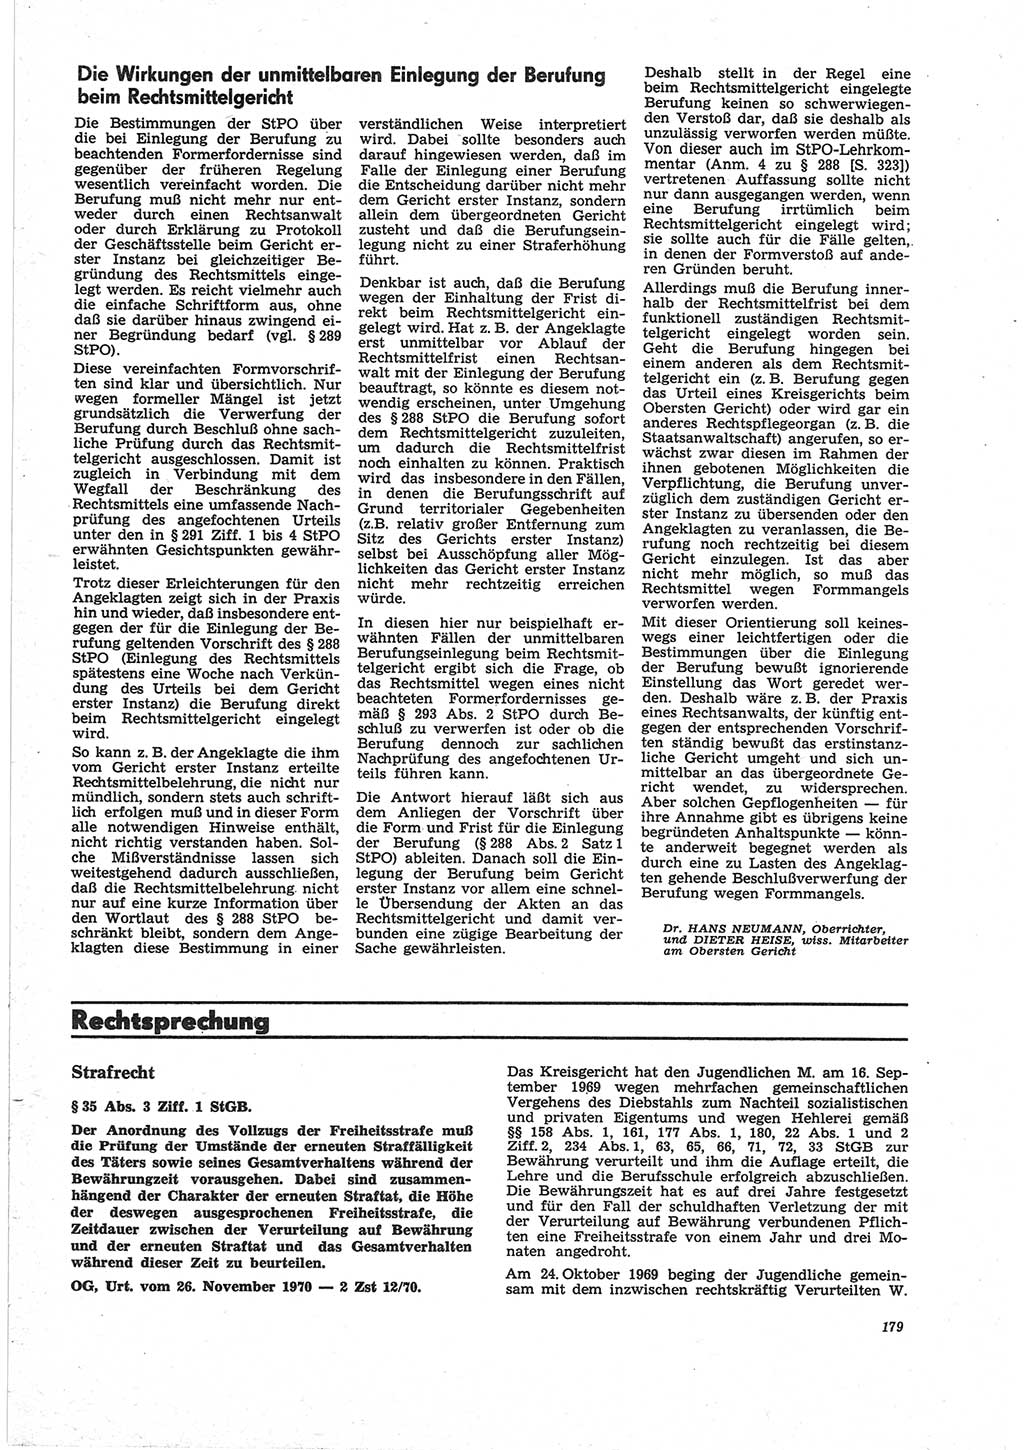 Neue Justiz (NJ), Zeitschrift für Recht und Rechtswissenschaft [Deutsche Demokratische Republik (DDR)], 25. Jahrgang 1971, Seite 179 (NJ DDR 1971, S. 179)